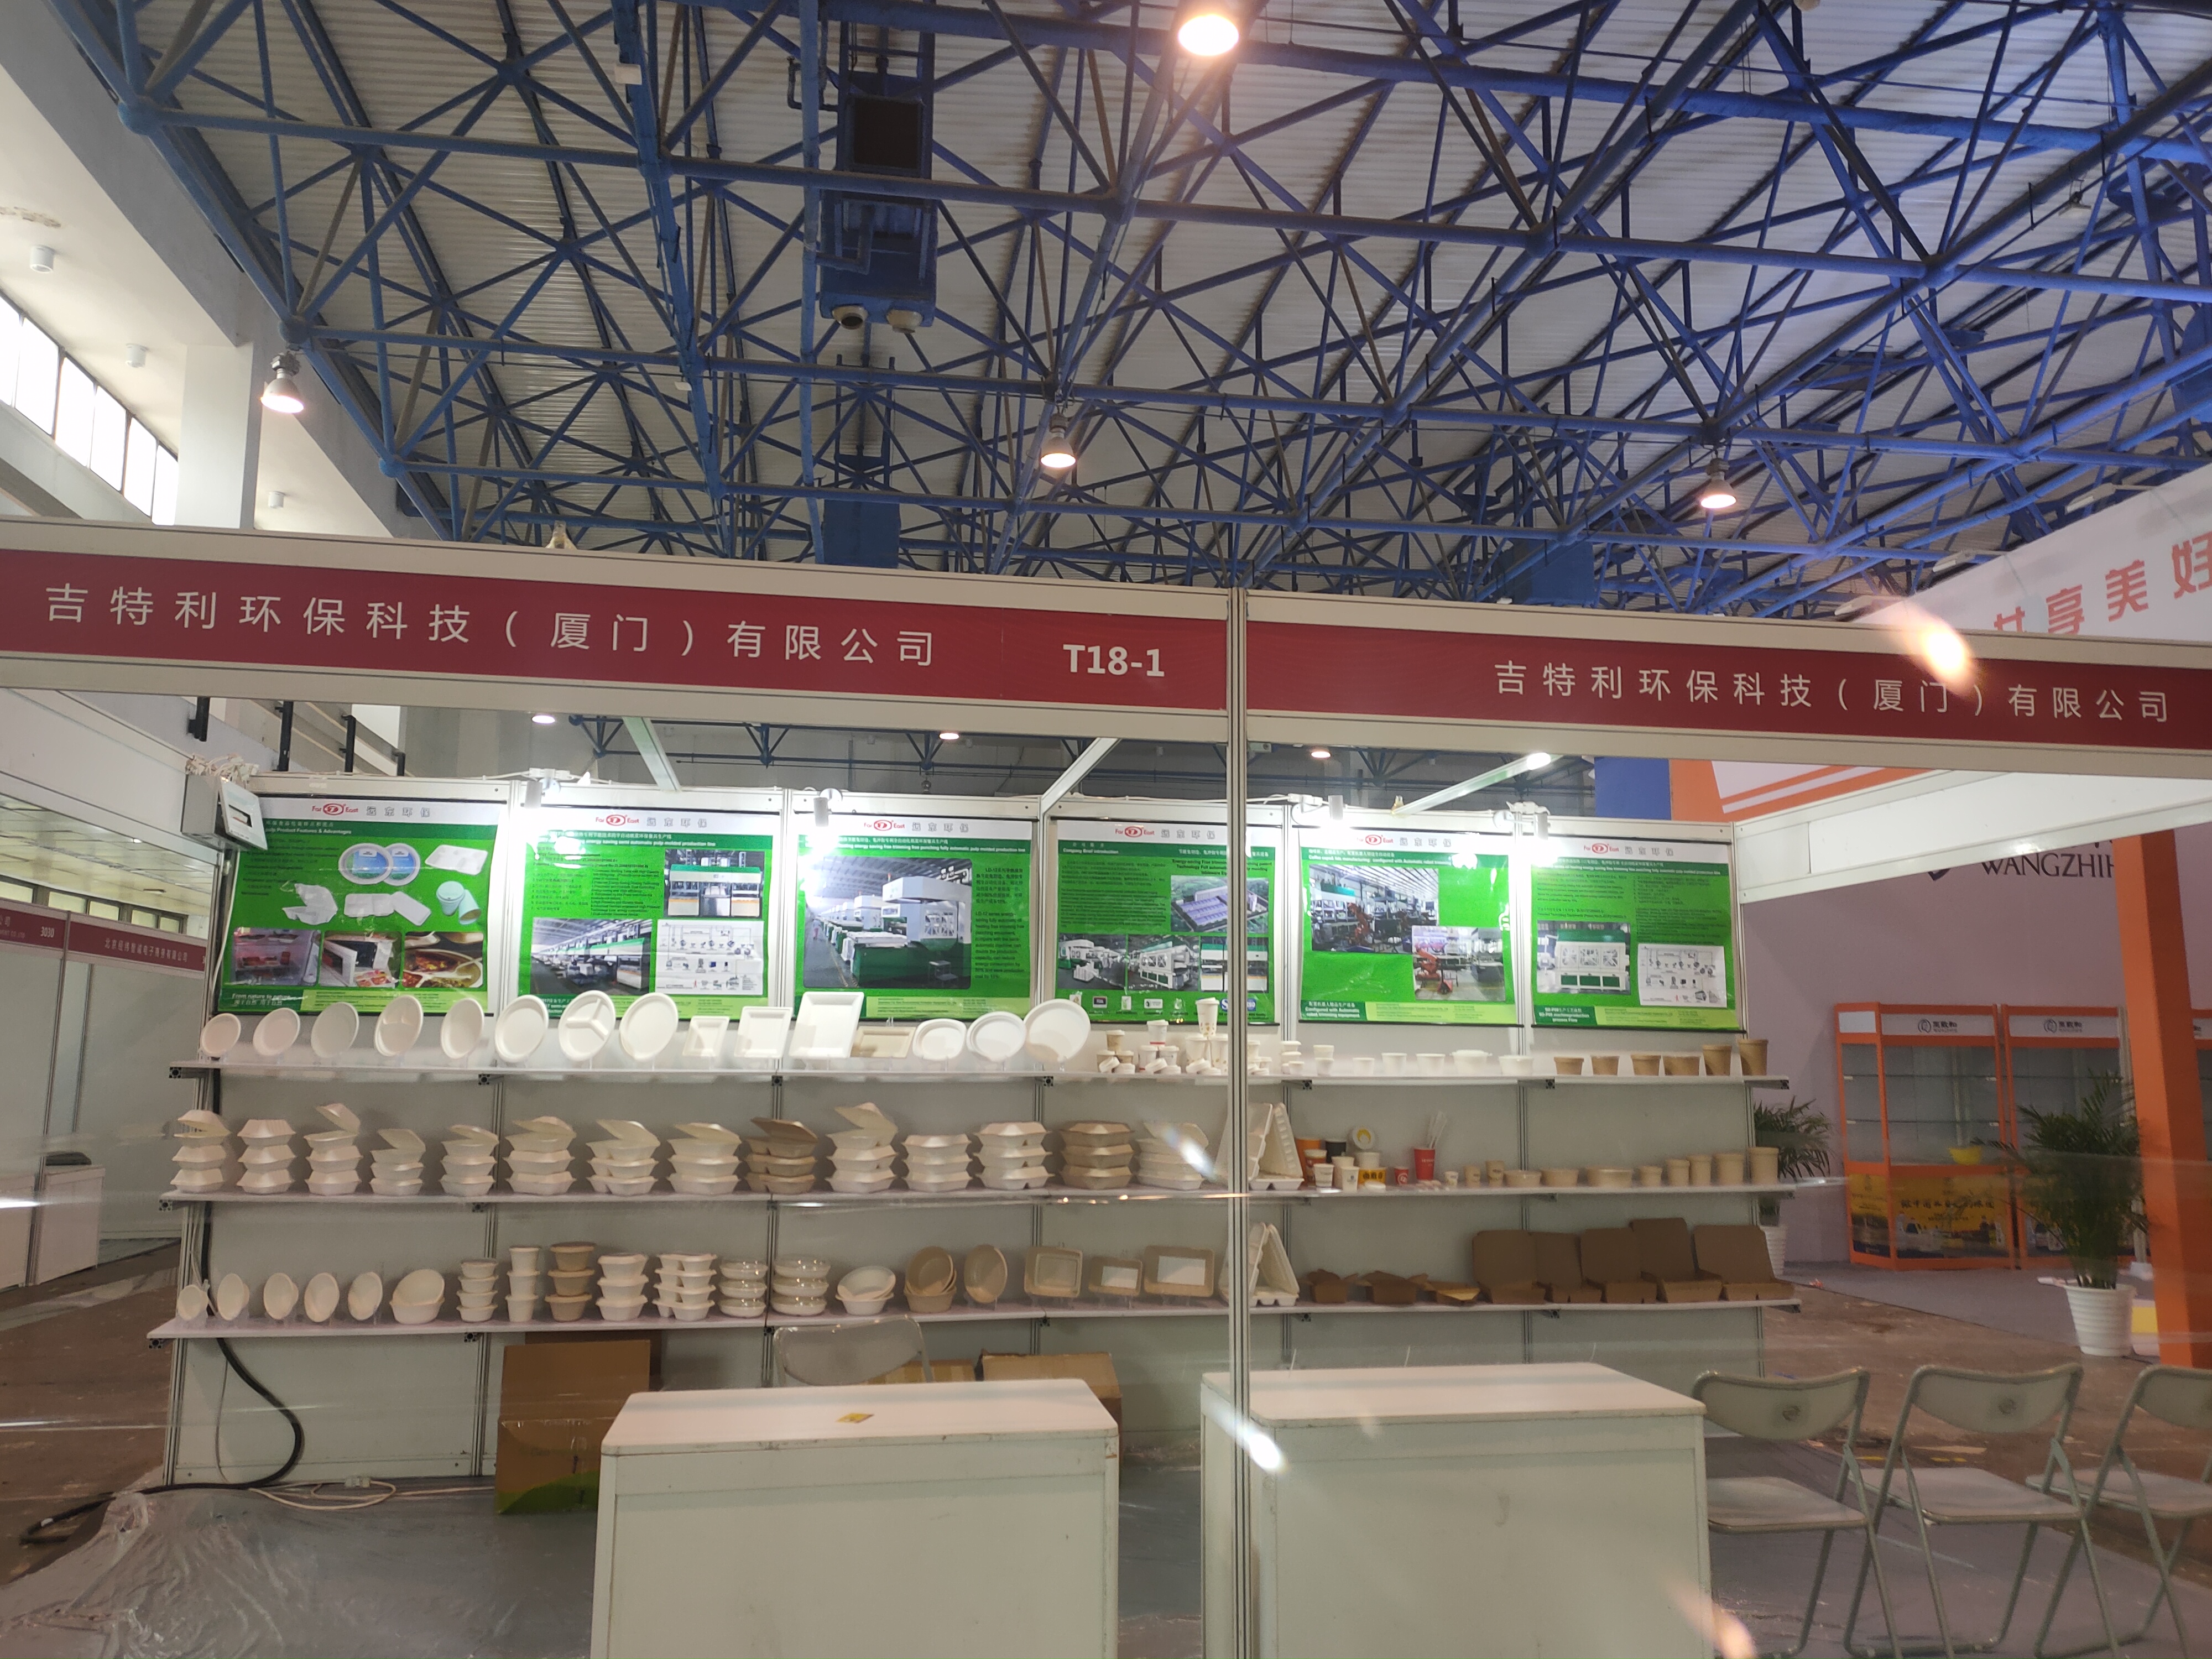 El 31 de julio, la 11ª Exposición Internacional de Catering Hotelero de Beijing concluyó con éxito.